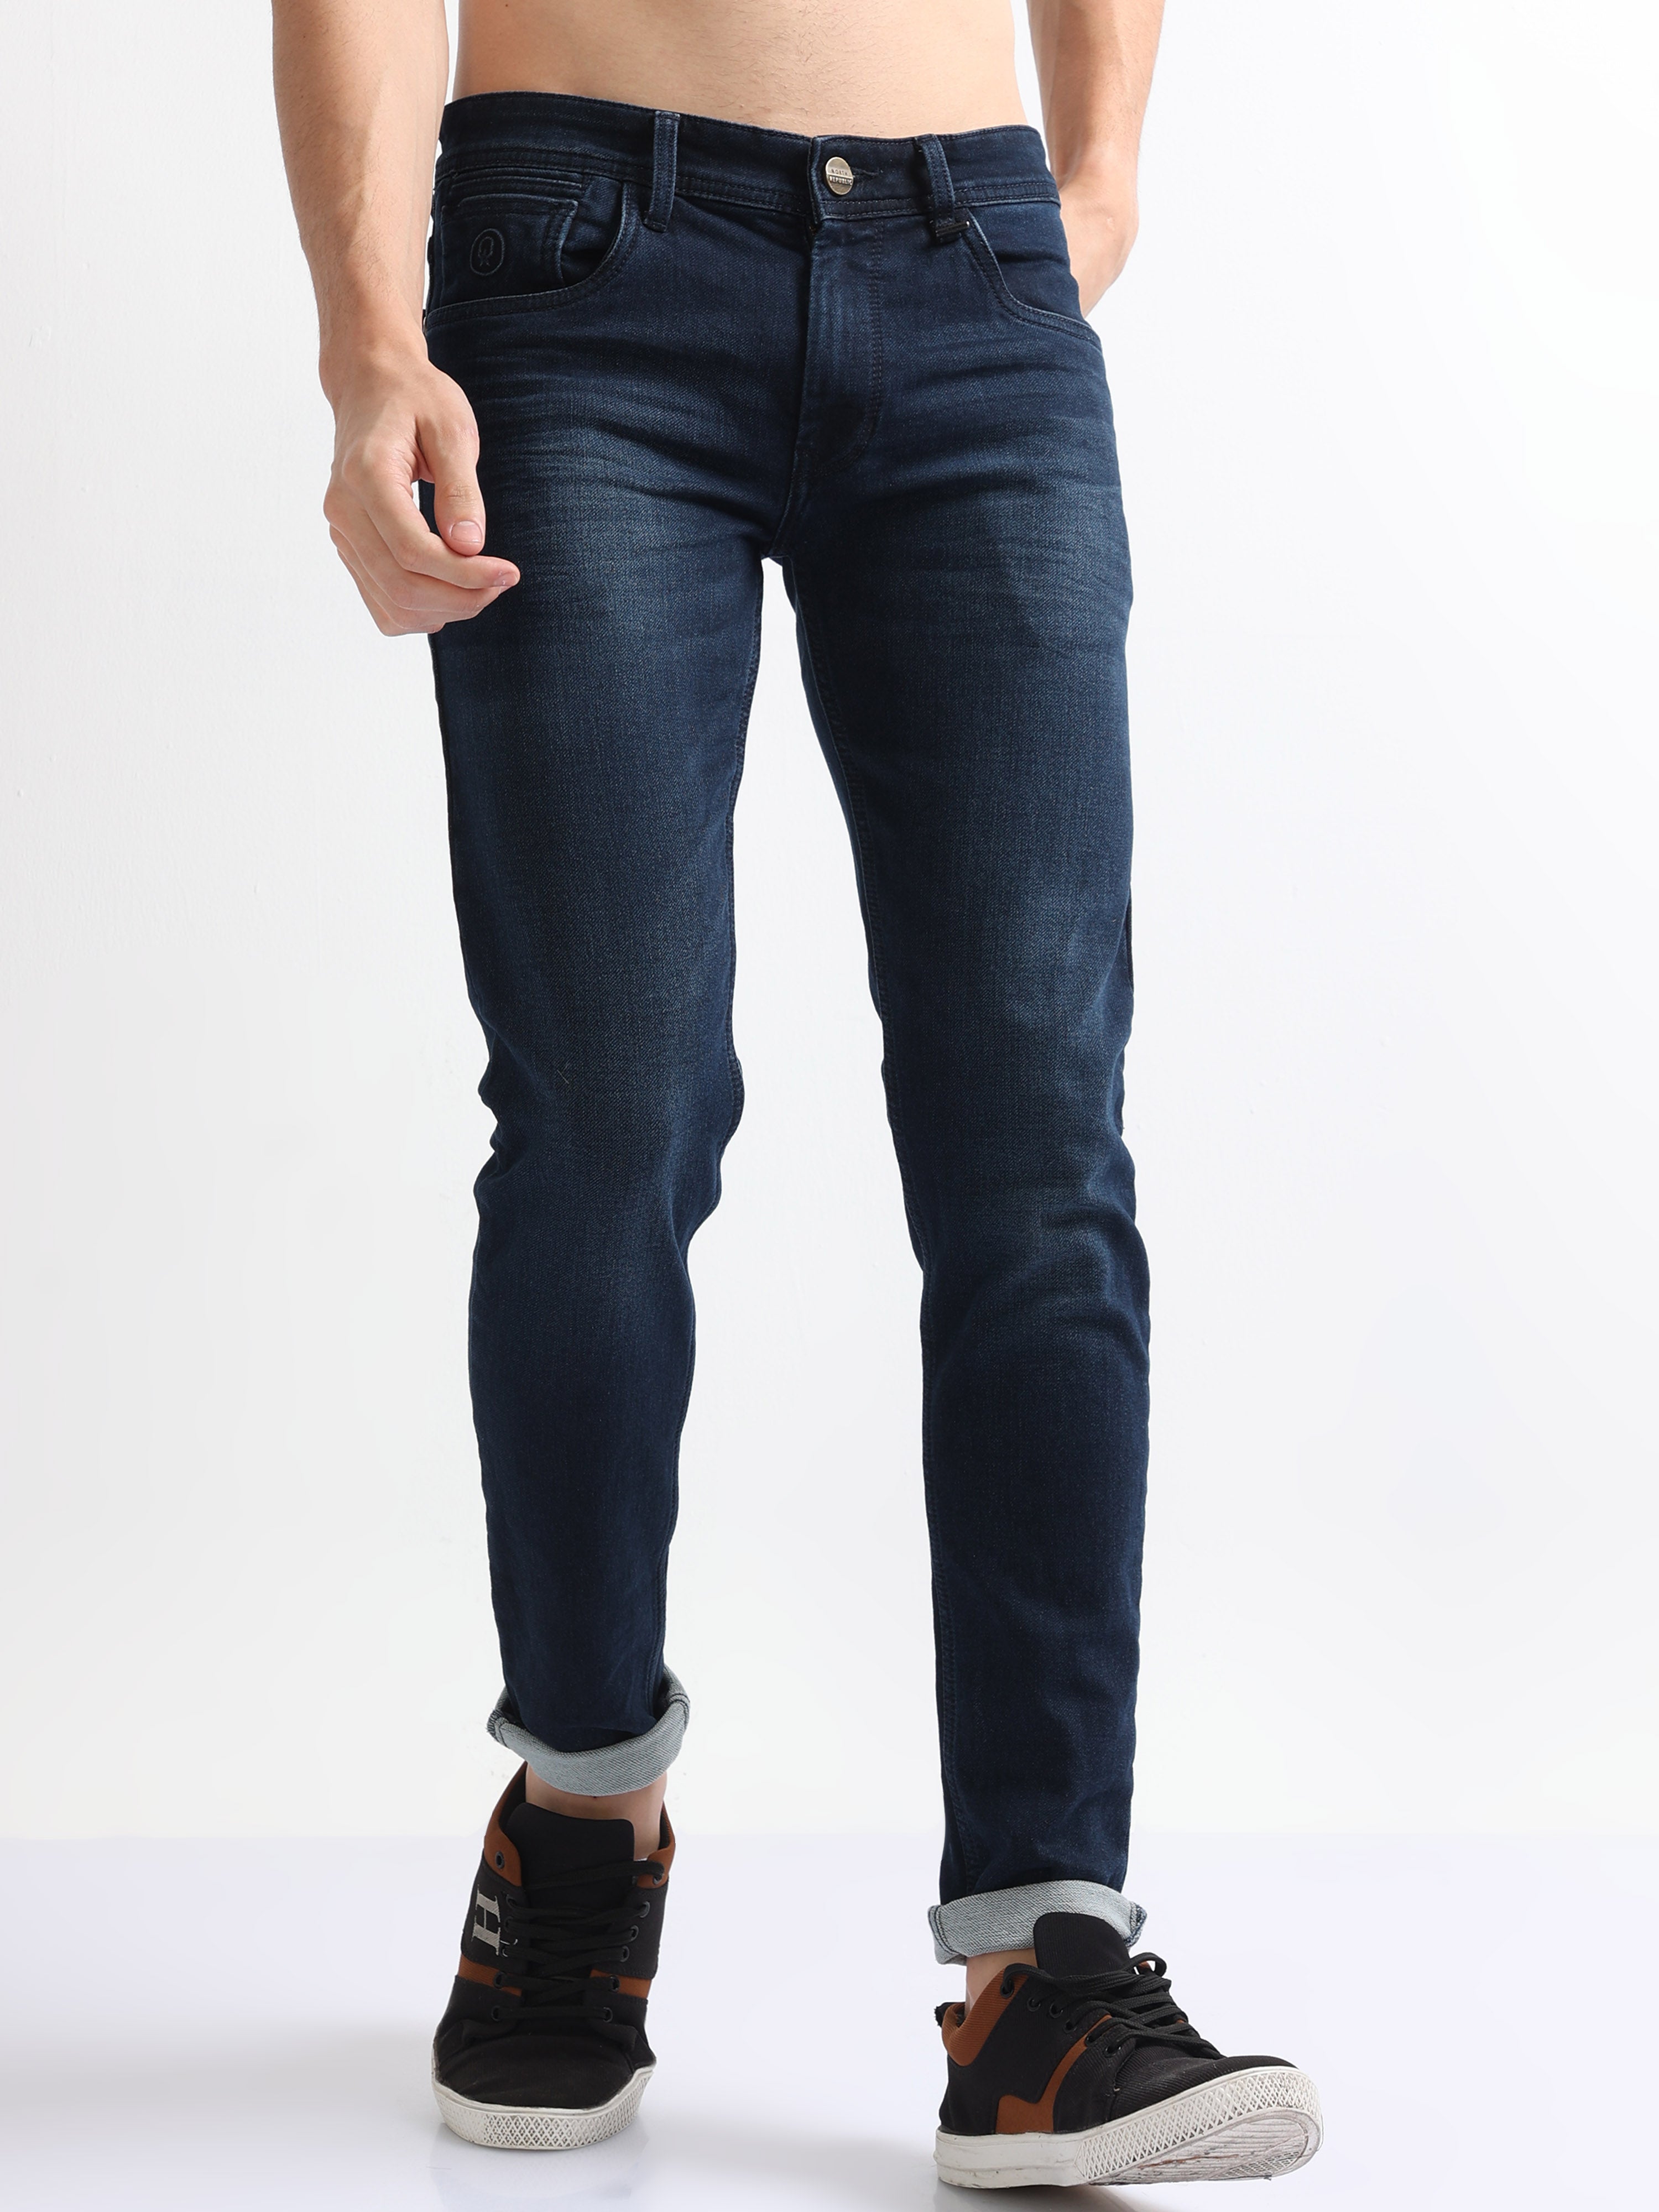 Denim republic jeans : BidBud